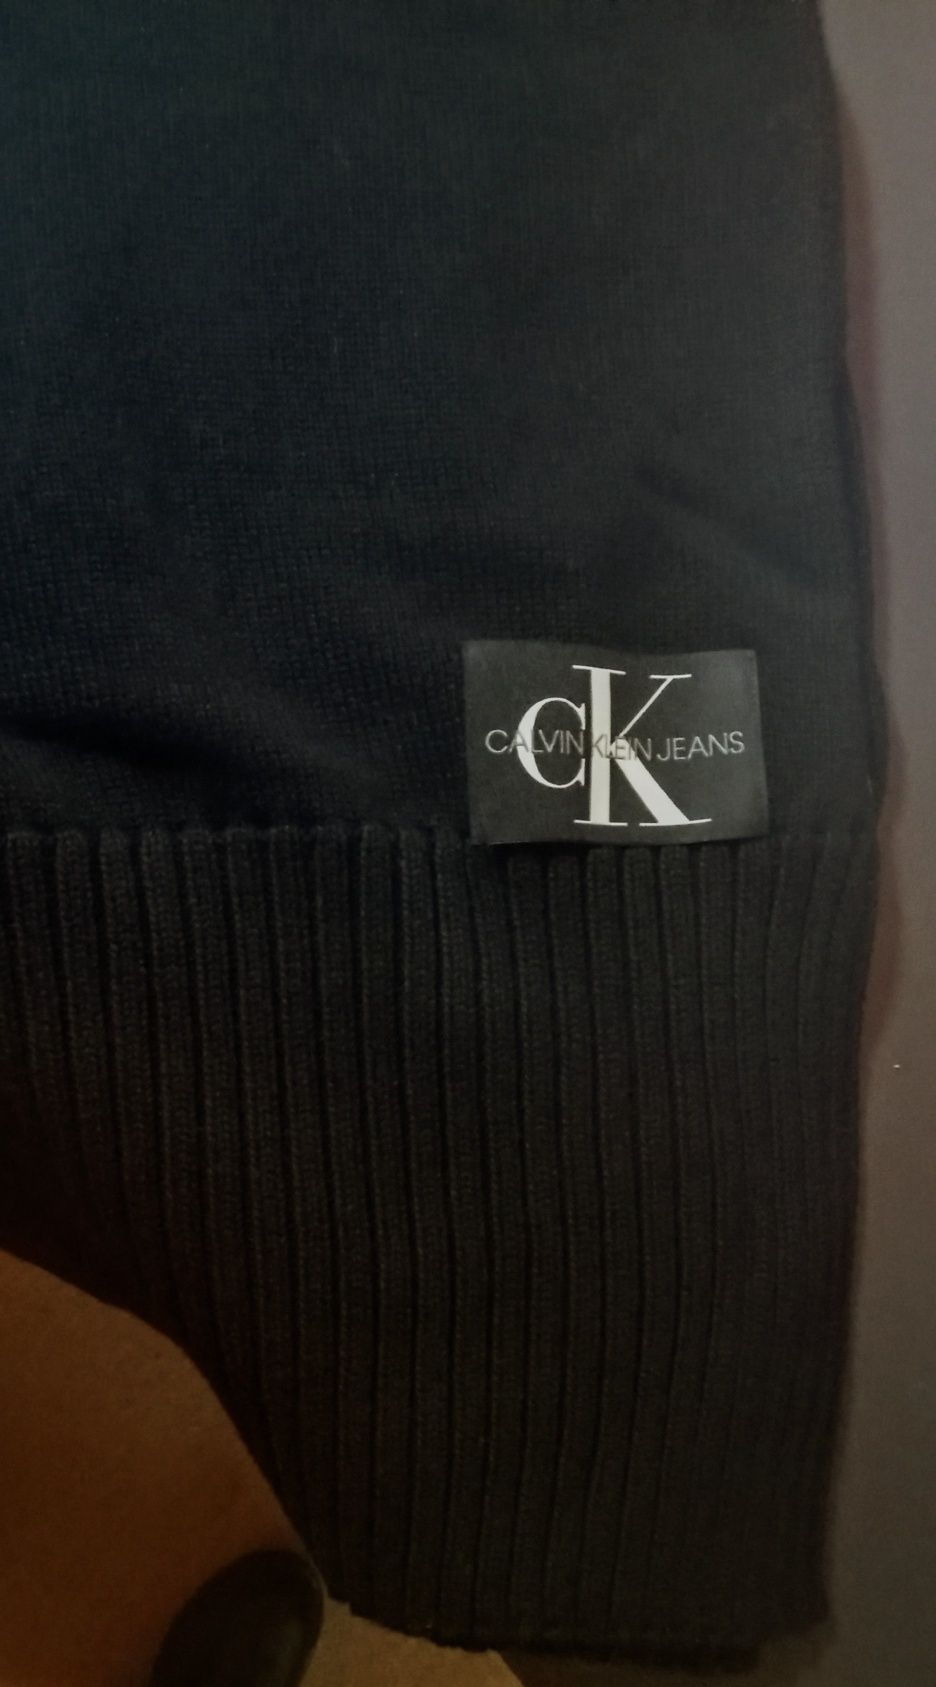 Szal Calvin Klein Jeans,nowy,z metkami,bawełniany